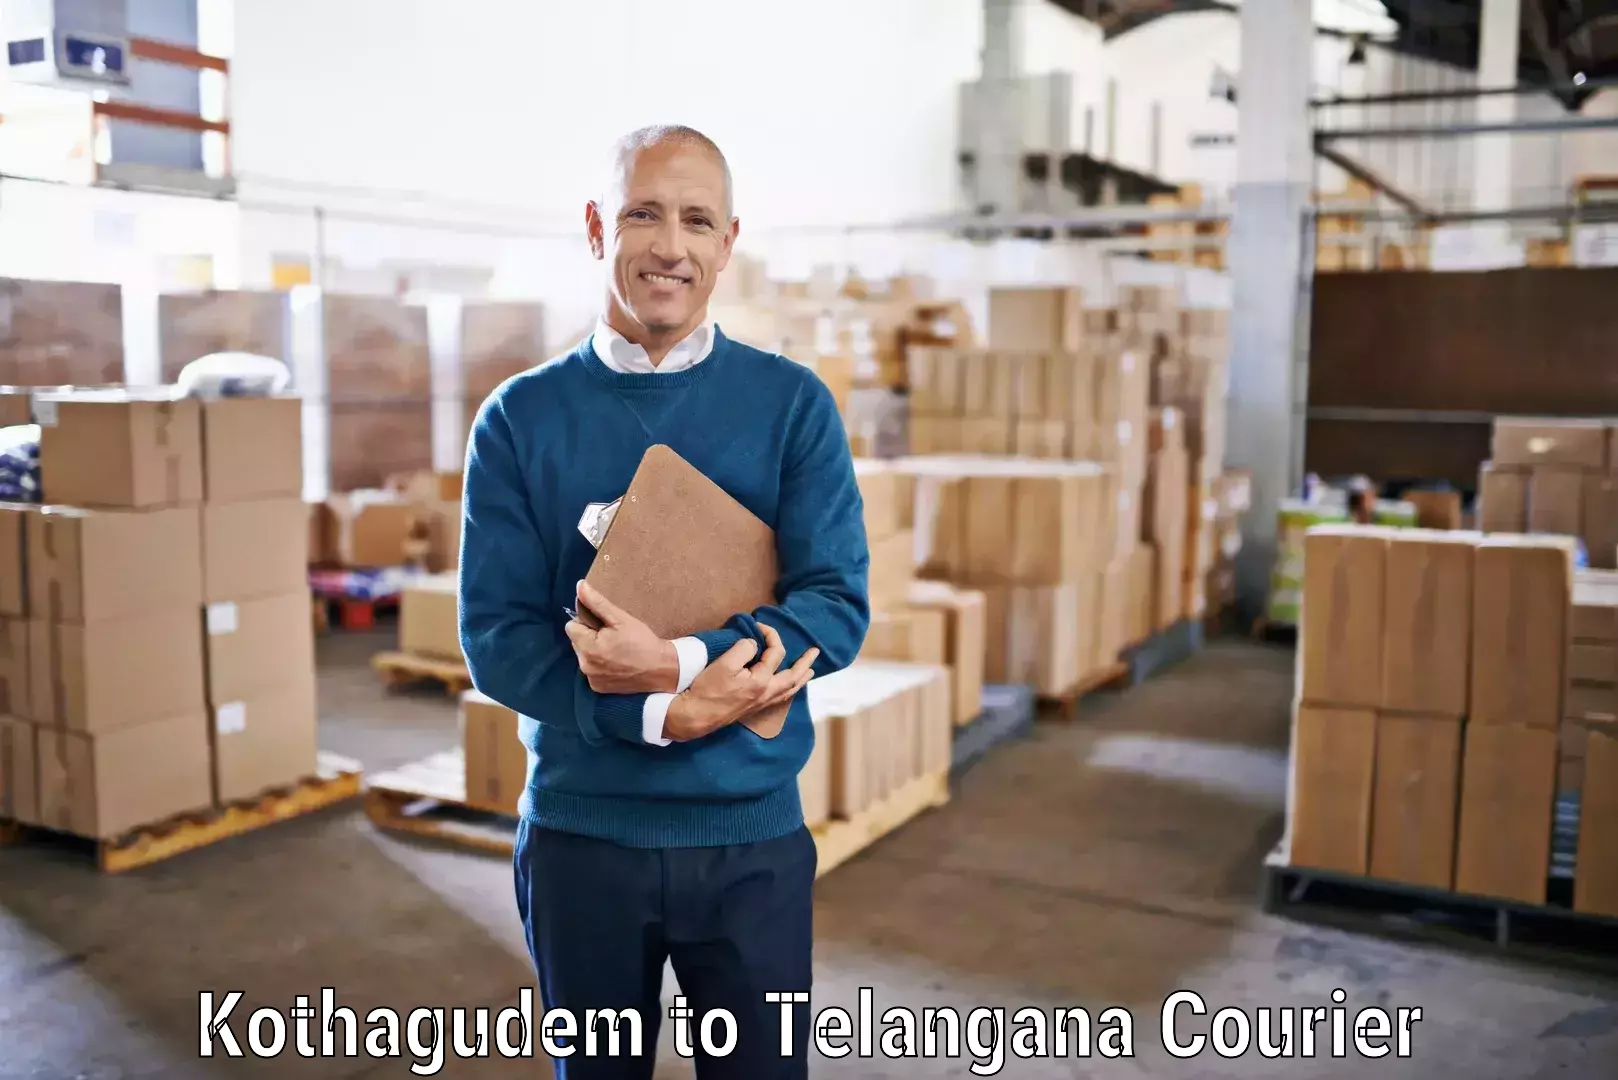 Professional courier handling Kothagudem to Odela